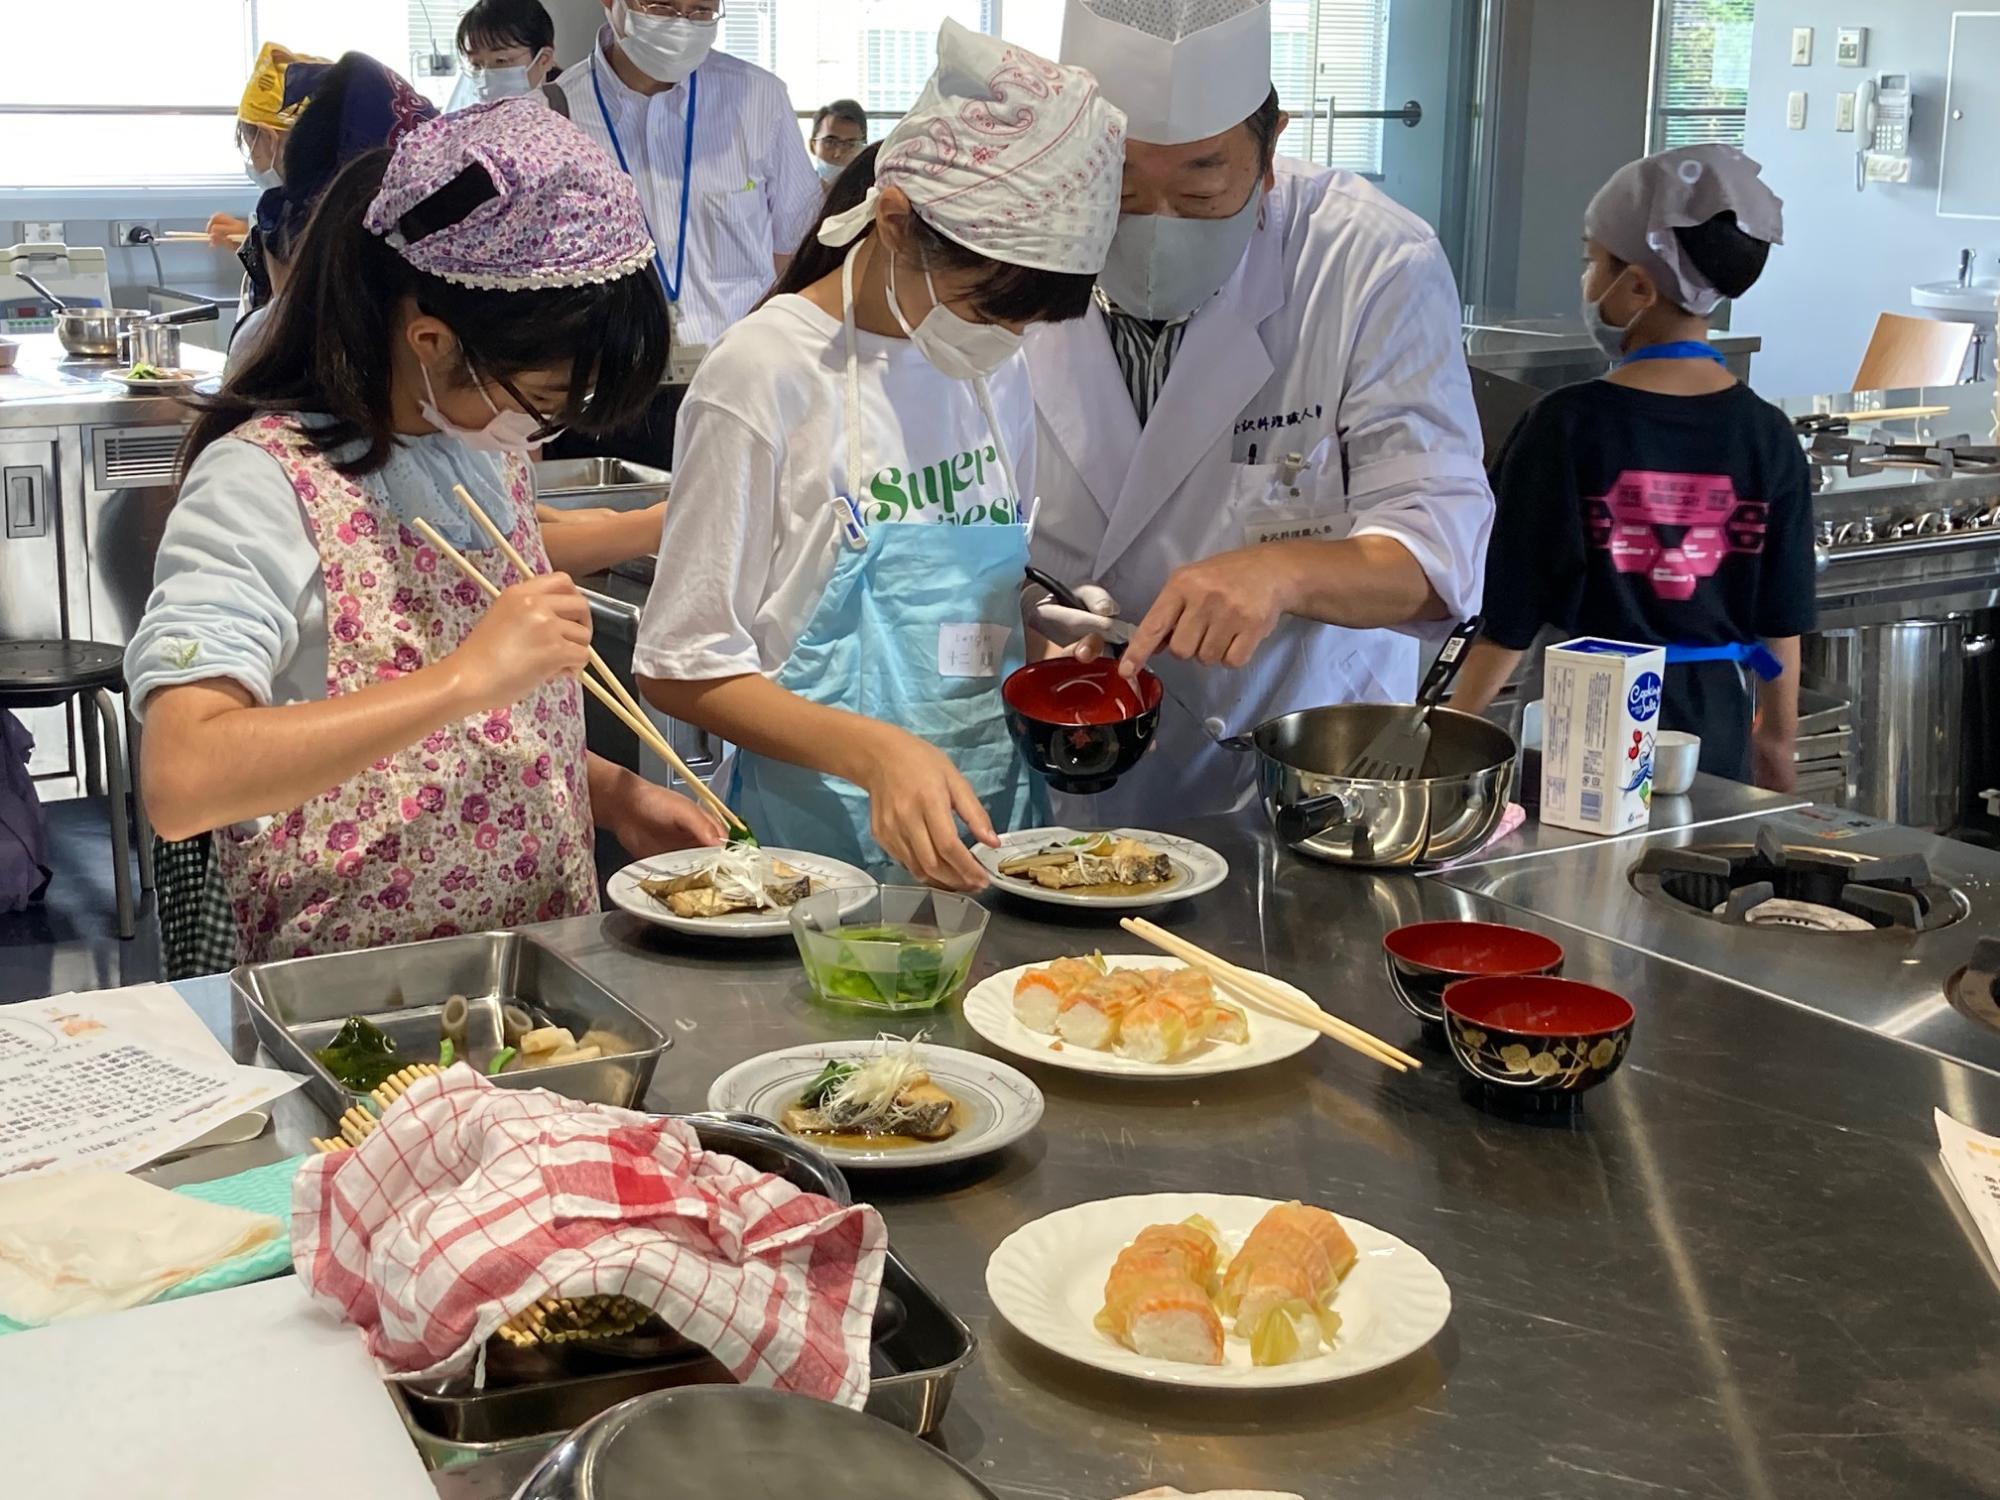 金沢の熟練の料理人が子どもたちに料理を教えている様子